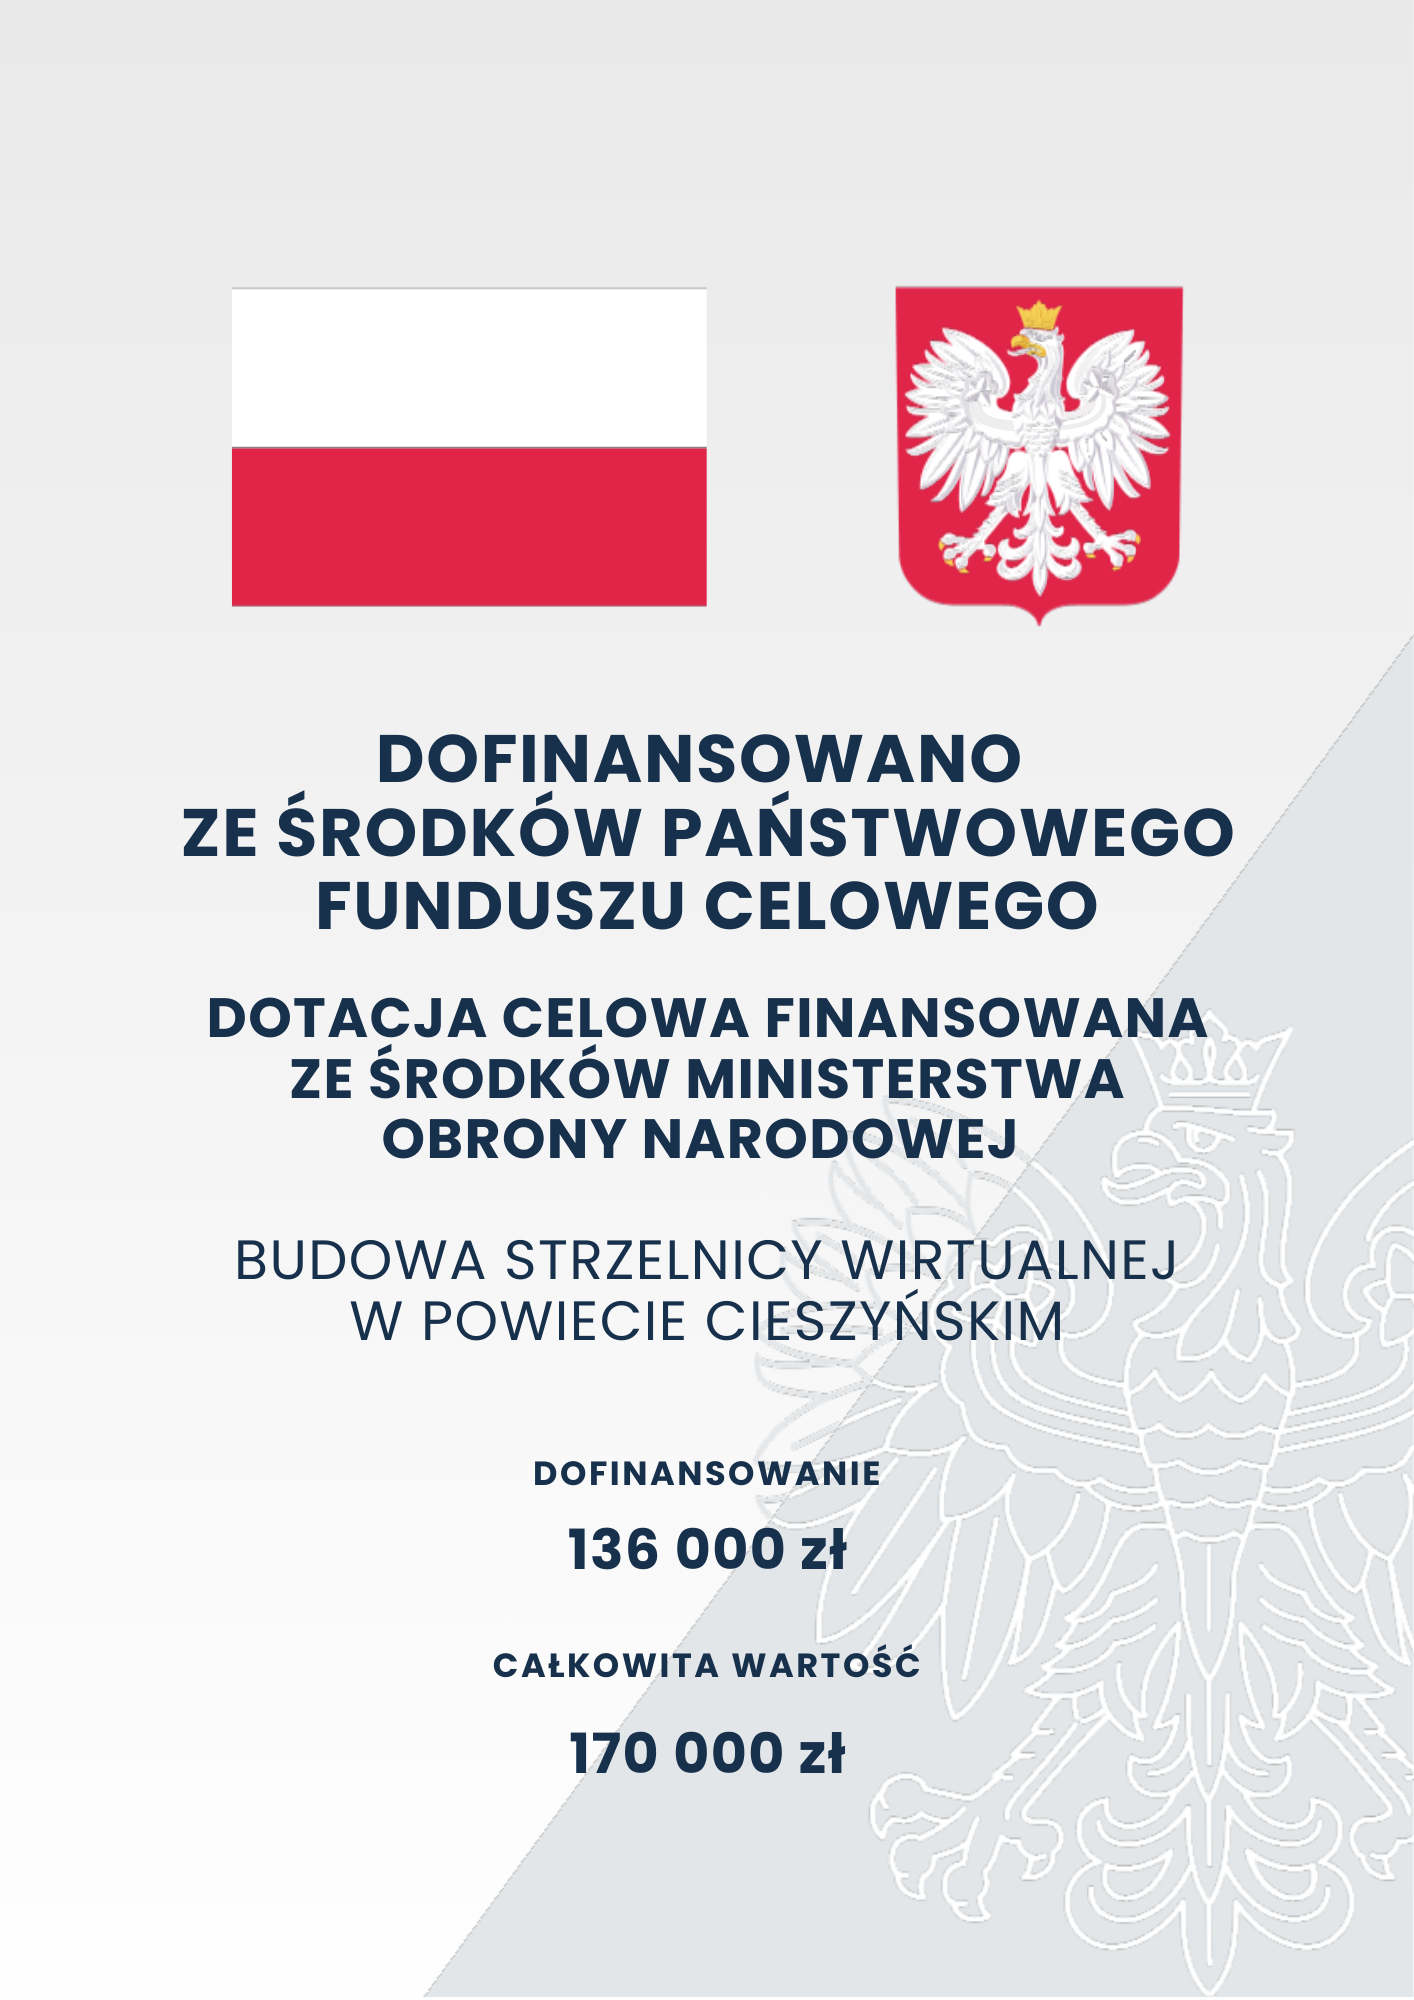 Plakat informujący o dofinansowaniu ze środków państwowego funduszu celowego - budowa strzelnicy wirtualnej w powiecie cieszyńskim 